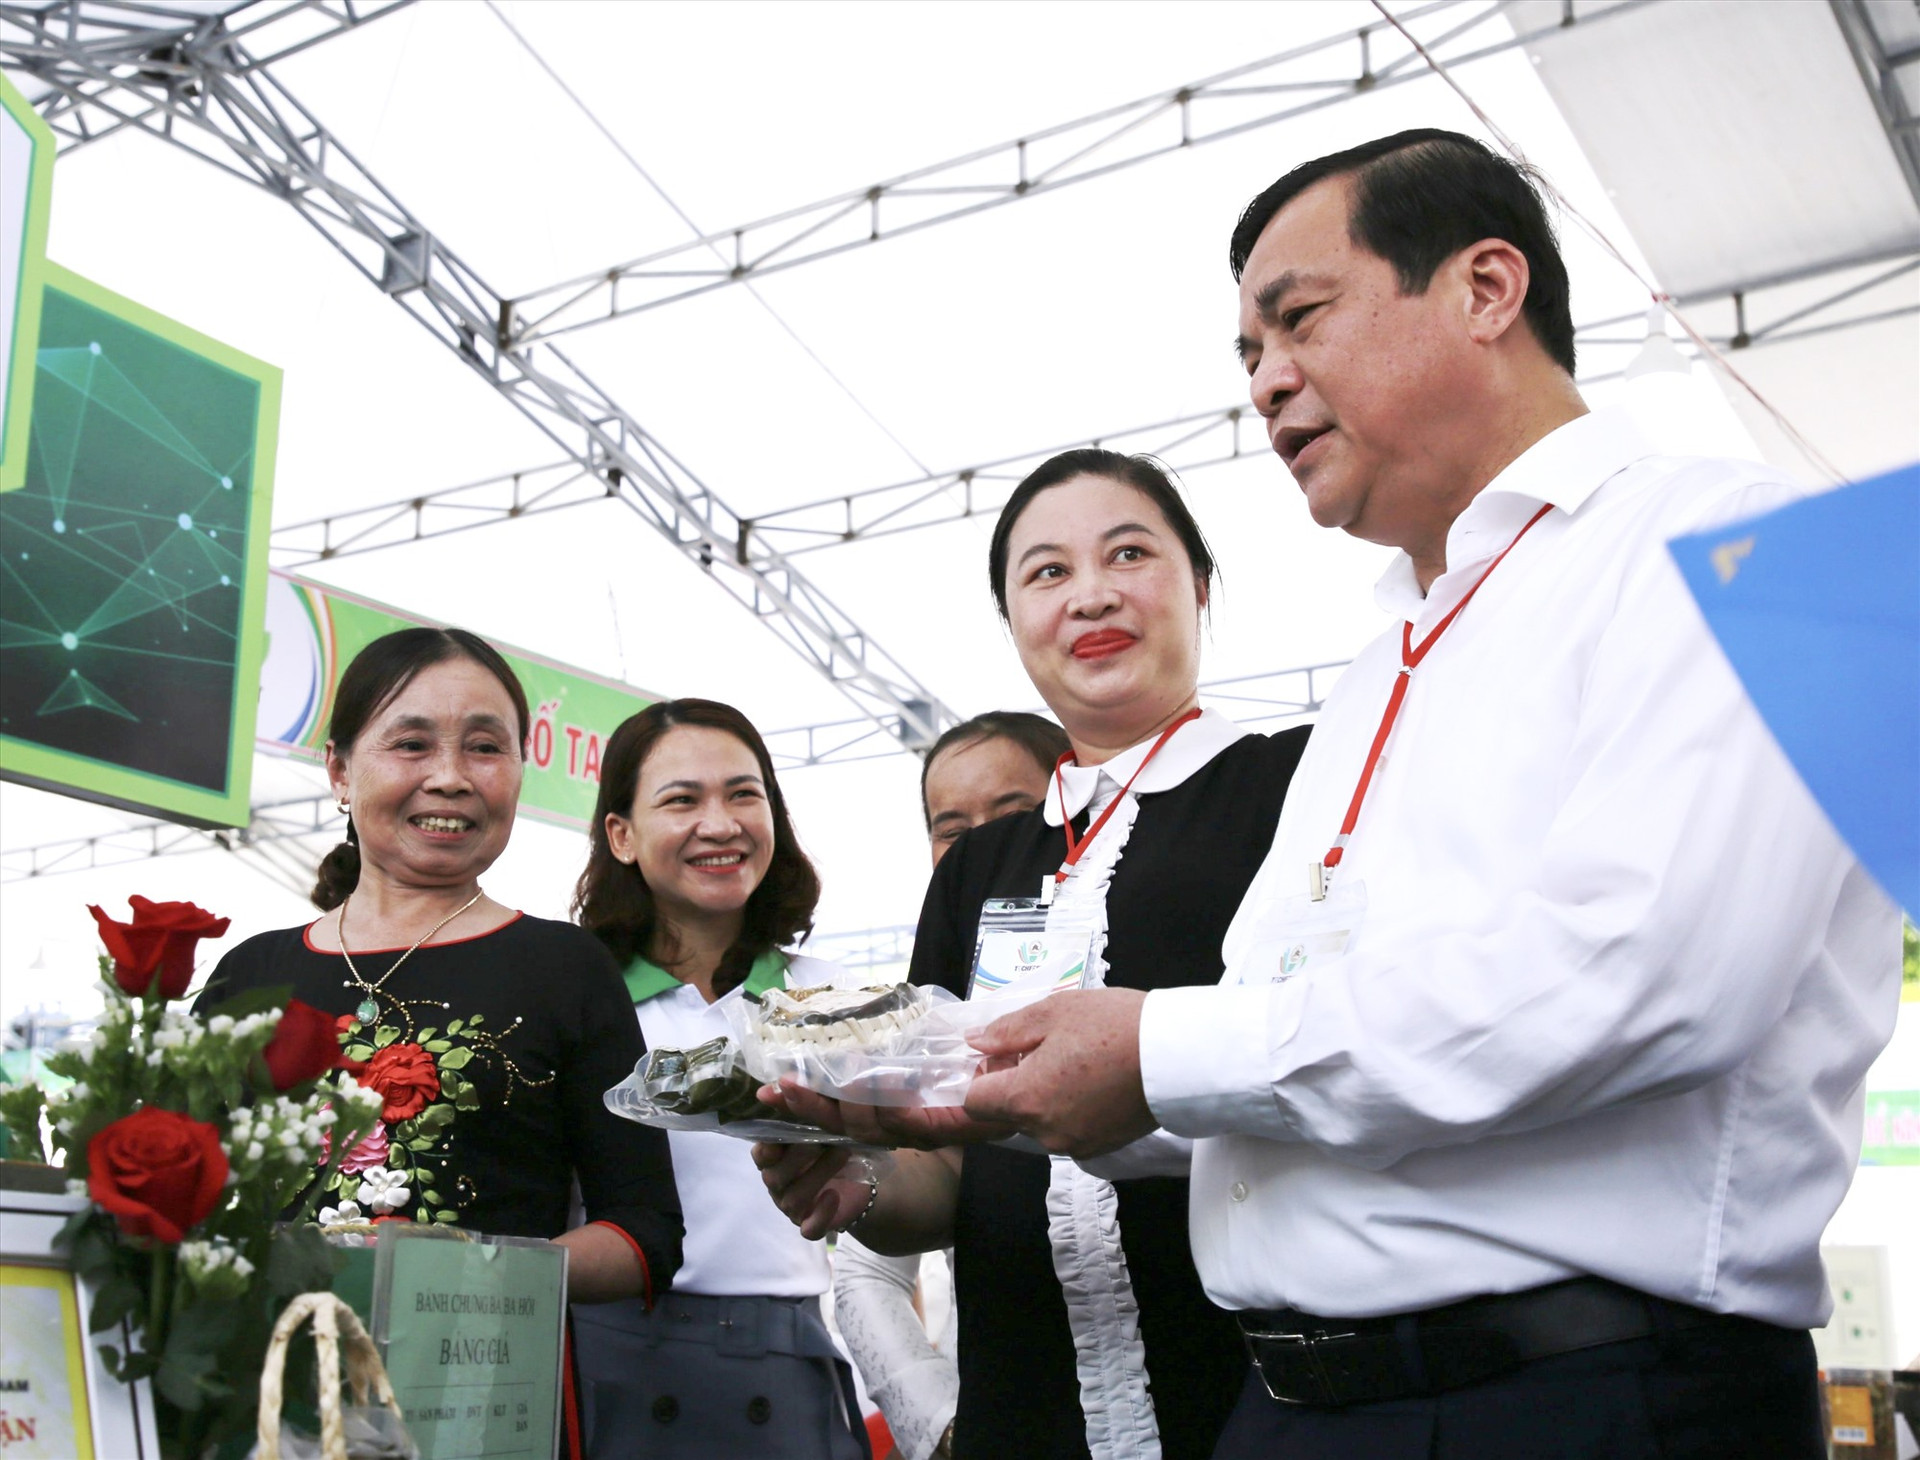 Bí thư Tỉnh ủy Phan Việt Cường thăm các gian hàng trưng bày sản phẩm trong khuôn khổ Techfest Quang Nam 2022. Ảnh: C.S - T.A